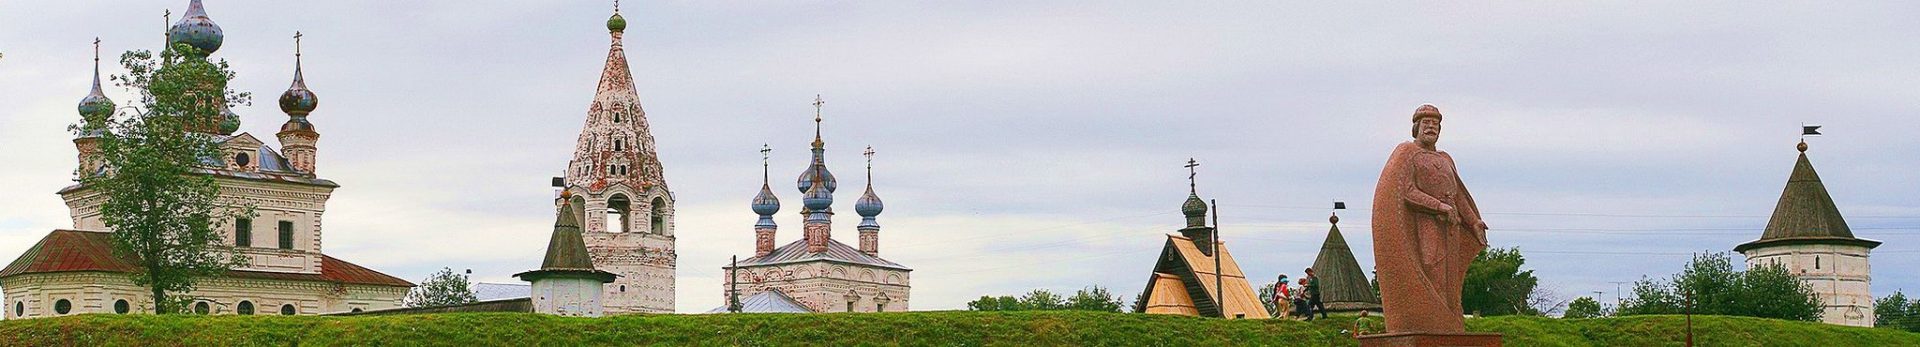 Монастыри России, русские храмы и зодчество, христианская культура и православие на Руси